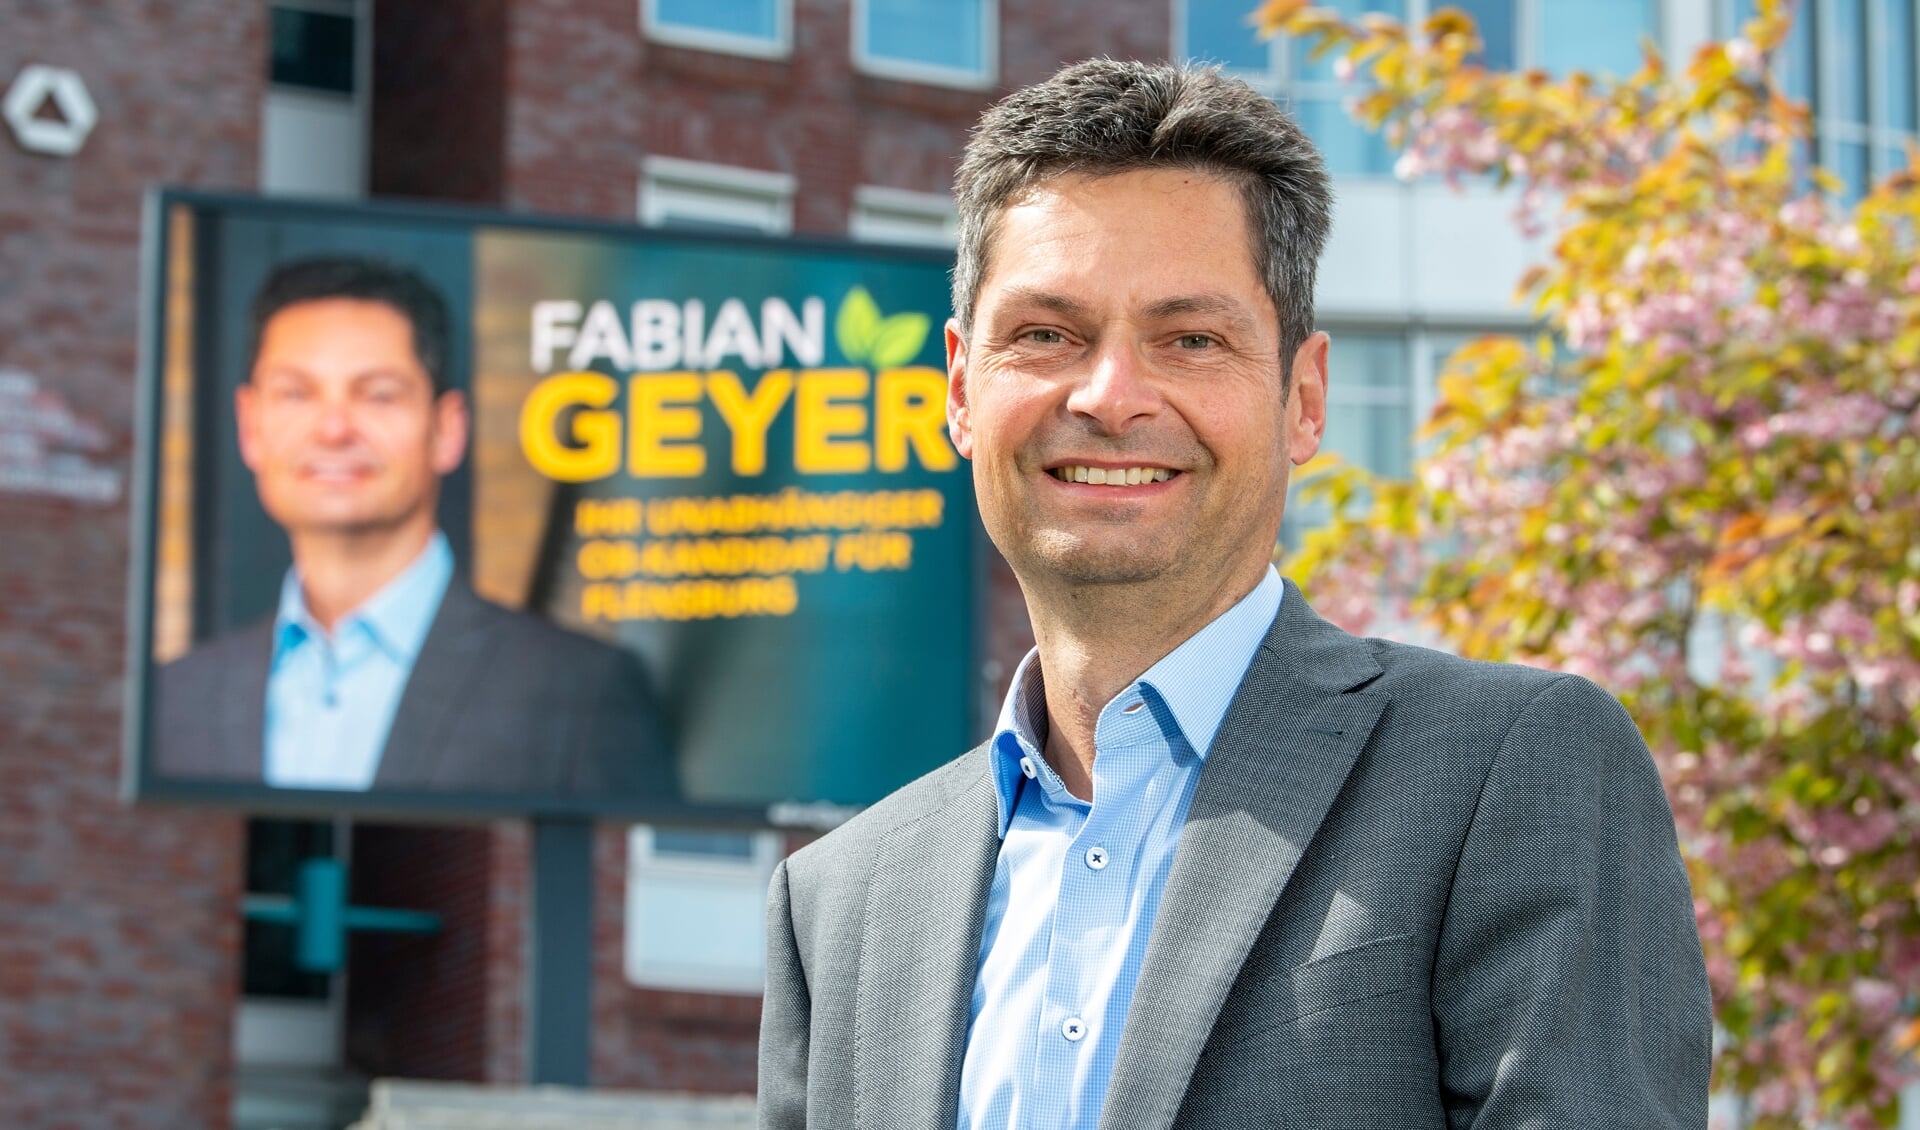 Ikke mange kan være i tvivl om, hvad Fabian Geyer vil. To store lystavler bærer hans reklame frem til september. Foto: